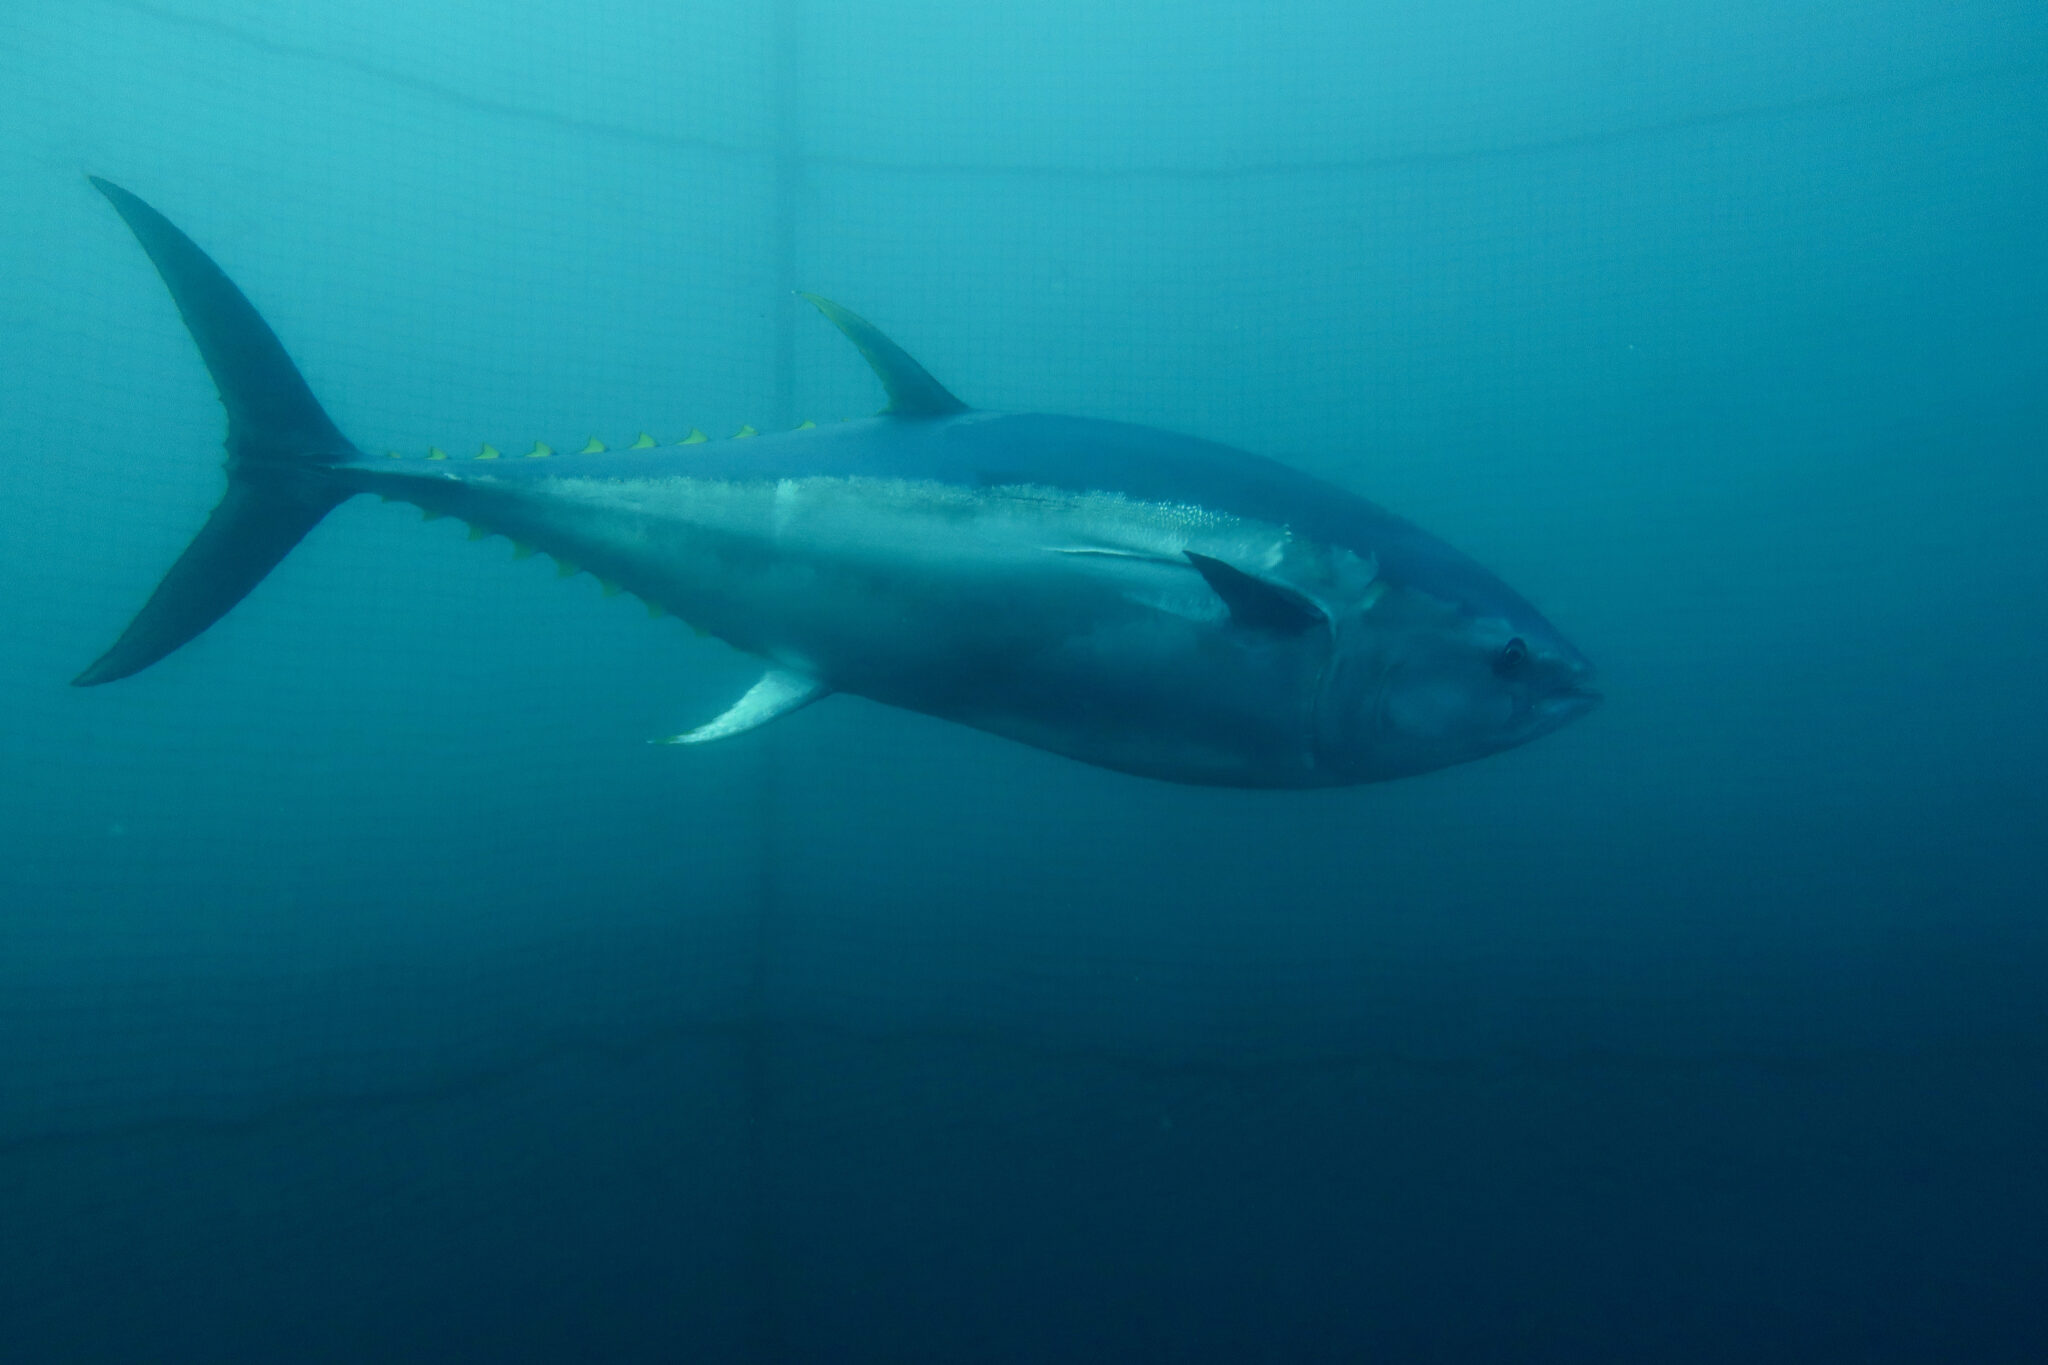 A bluefin tuna underwater